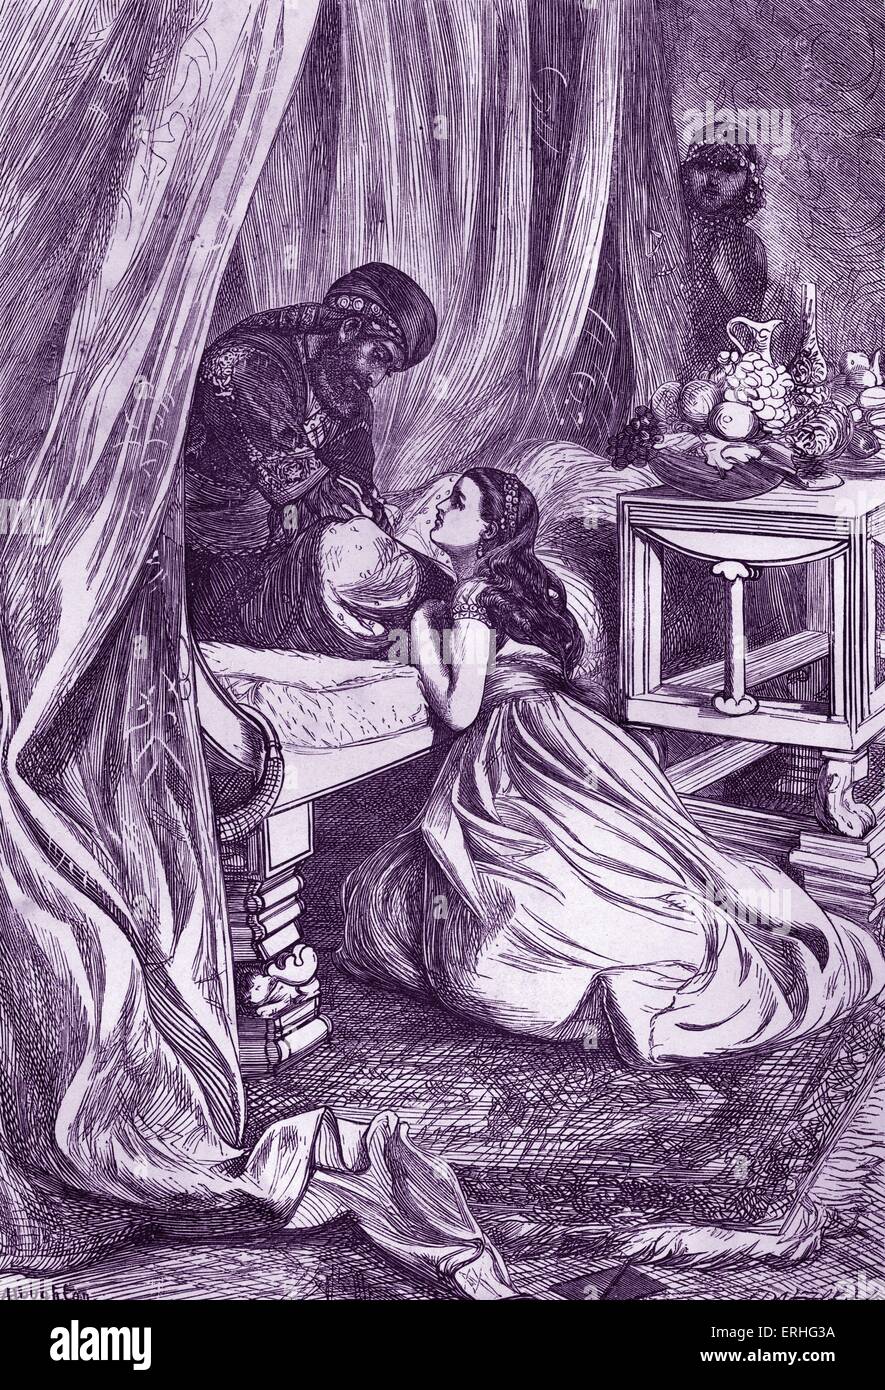 Arabian Nights Märchen - tausend und eine Nacht. Bildunterschrift lautet: "Der Sultan begnadigt Scheherazade" Illustration von Arthur Boyd Stockfoto